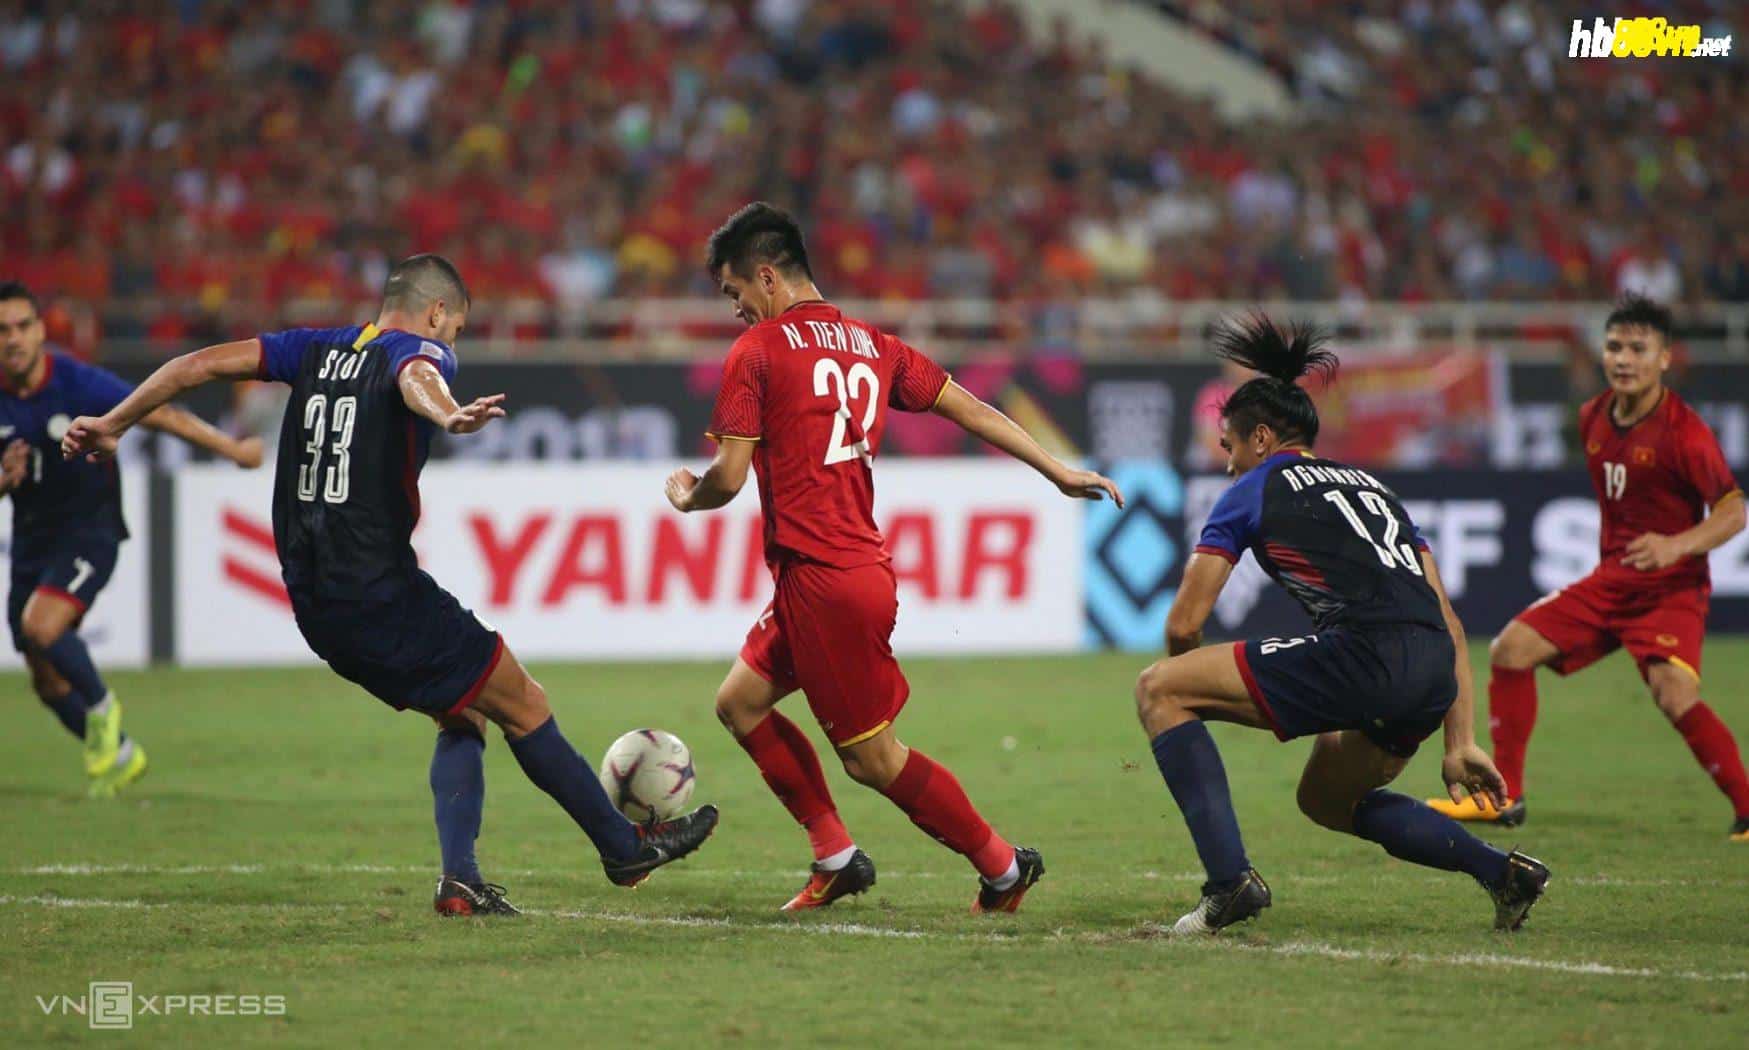 Nguyễn Tiến Linh đi bóng khi Việt Nam đánh bại Philippines 2-1 trong trận bán kết AFF Cup 2018 tại Mỹ Đình.